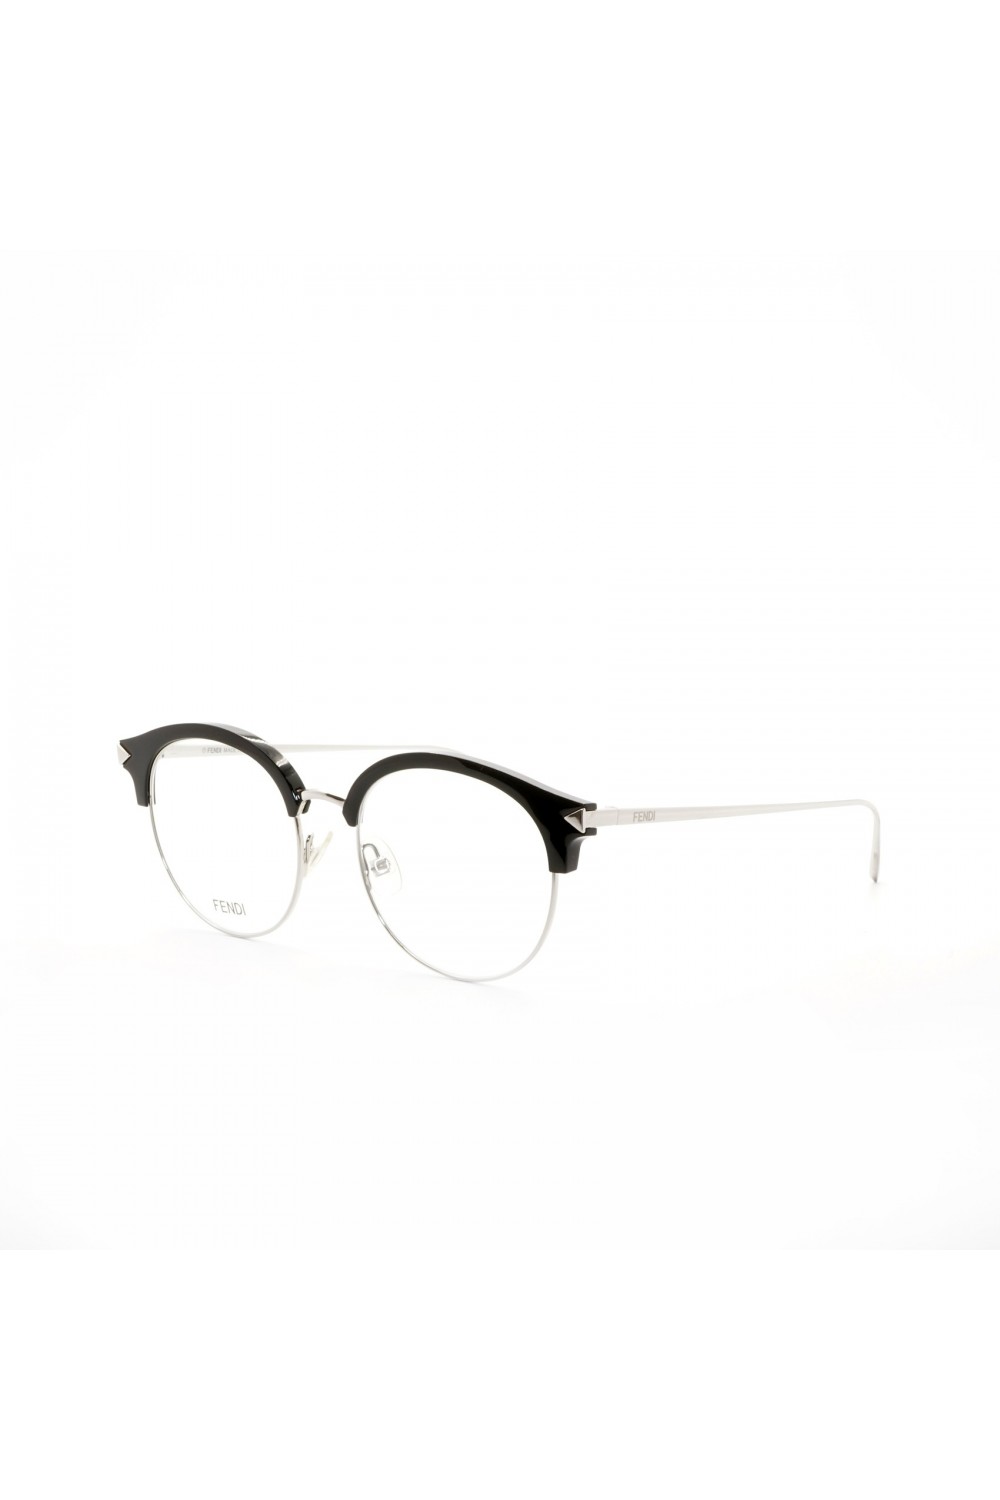 Fendi - Occhiali da vista combinati tondi per donna nero - FF0165 RMG